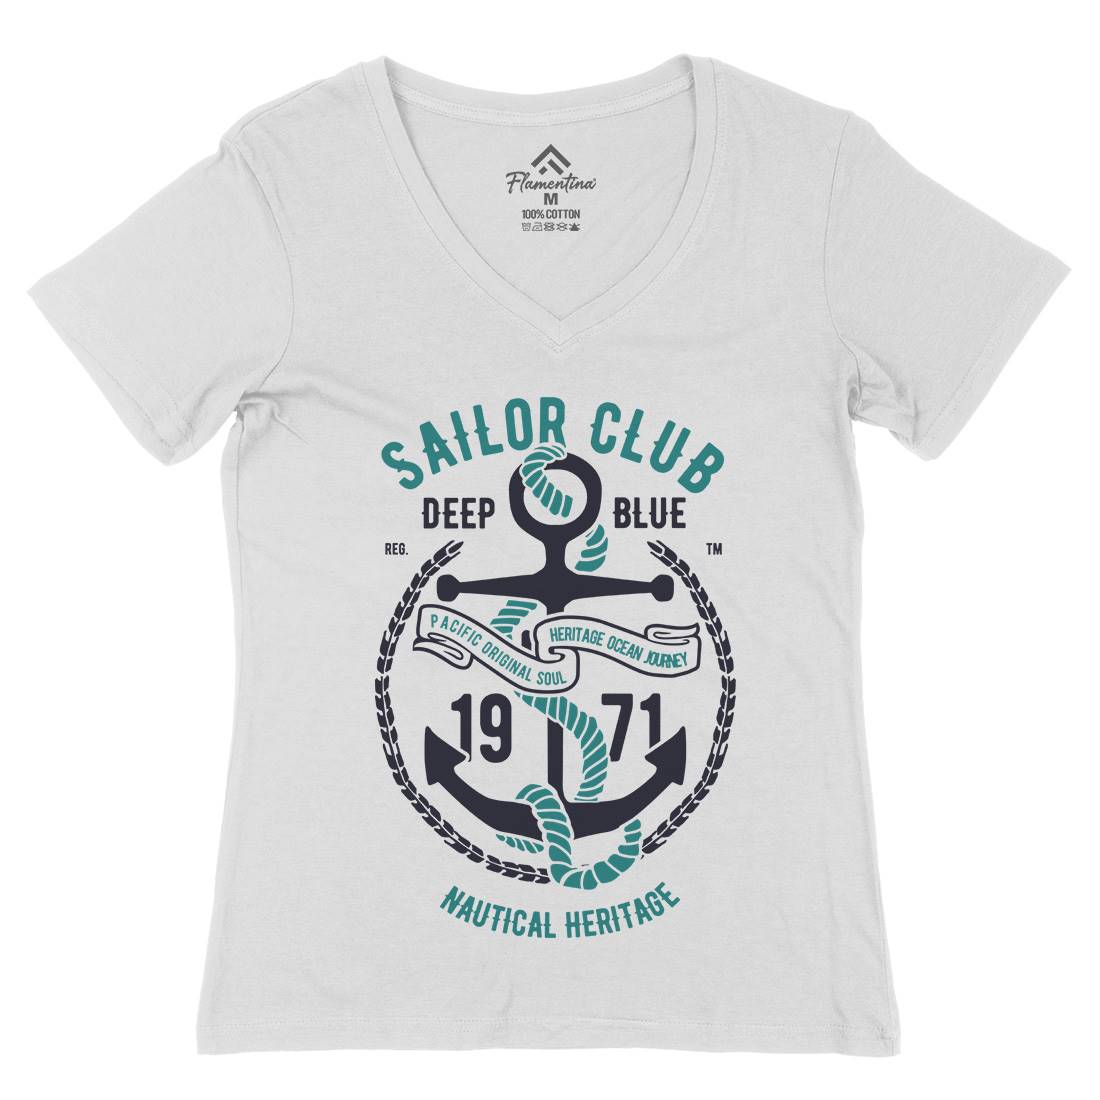 Sailor Club Womens Organic V-Neck T-Shirt Navy B445